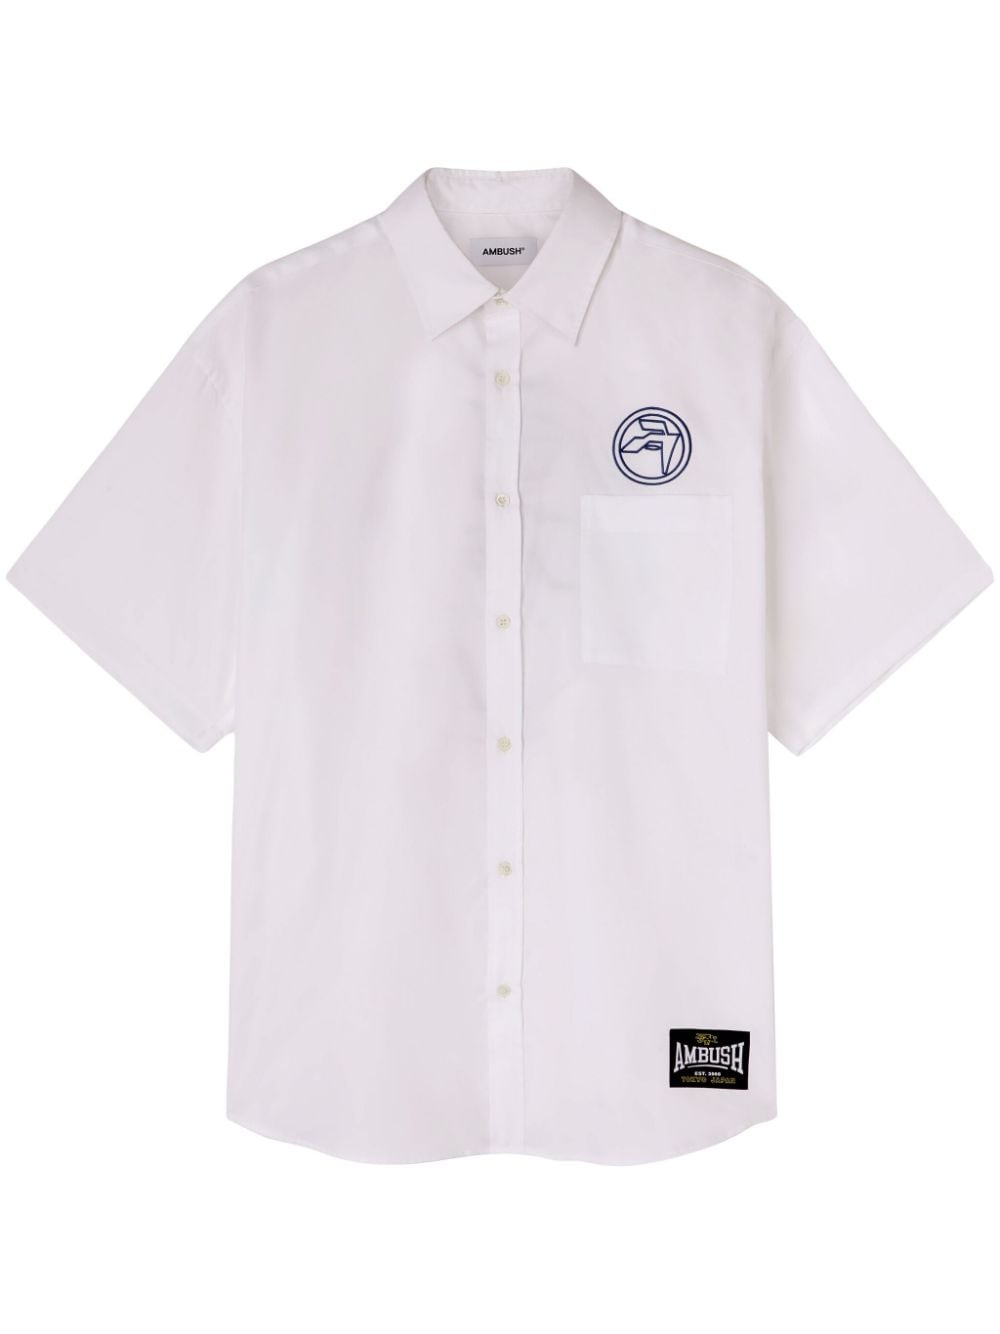 AMBUSH logo-embroidered cotton shirt - White von AMBUSH